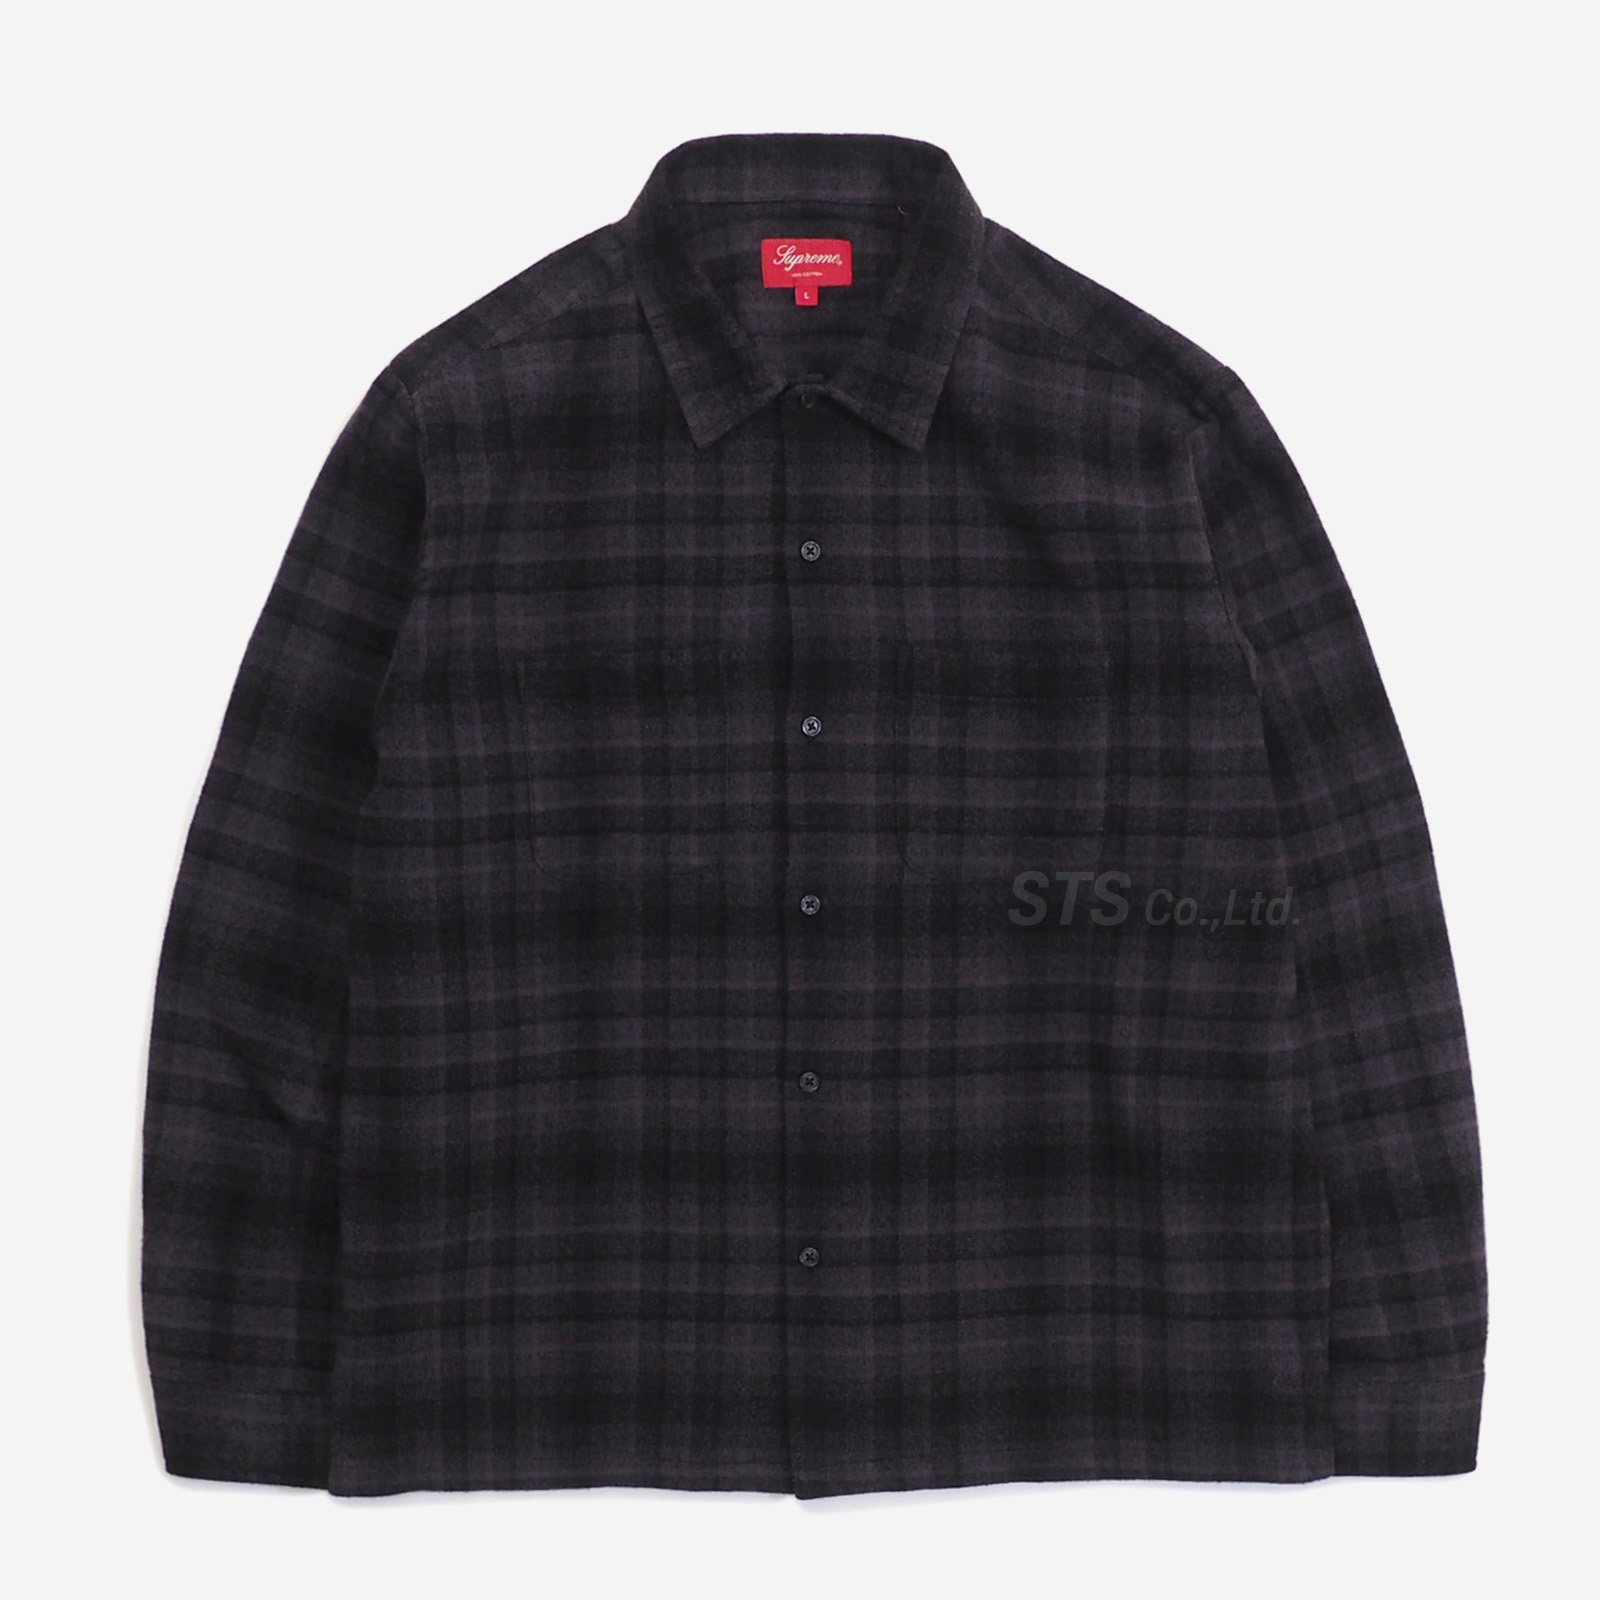 メンズSupreme plaid flannel shirt サイズL - シャツ